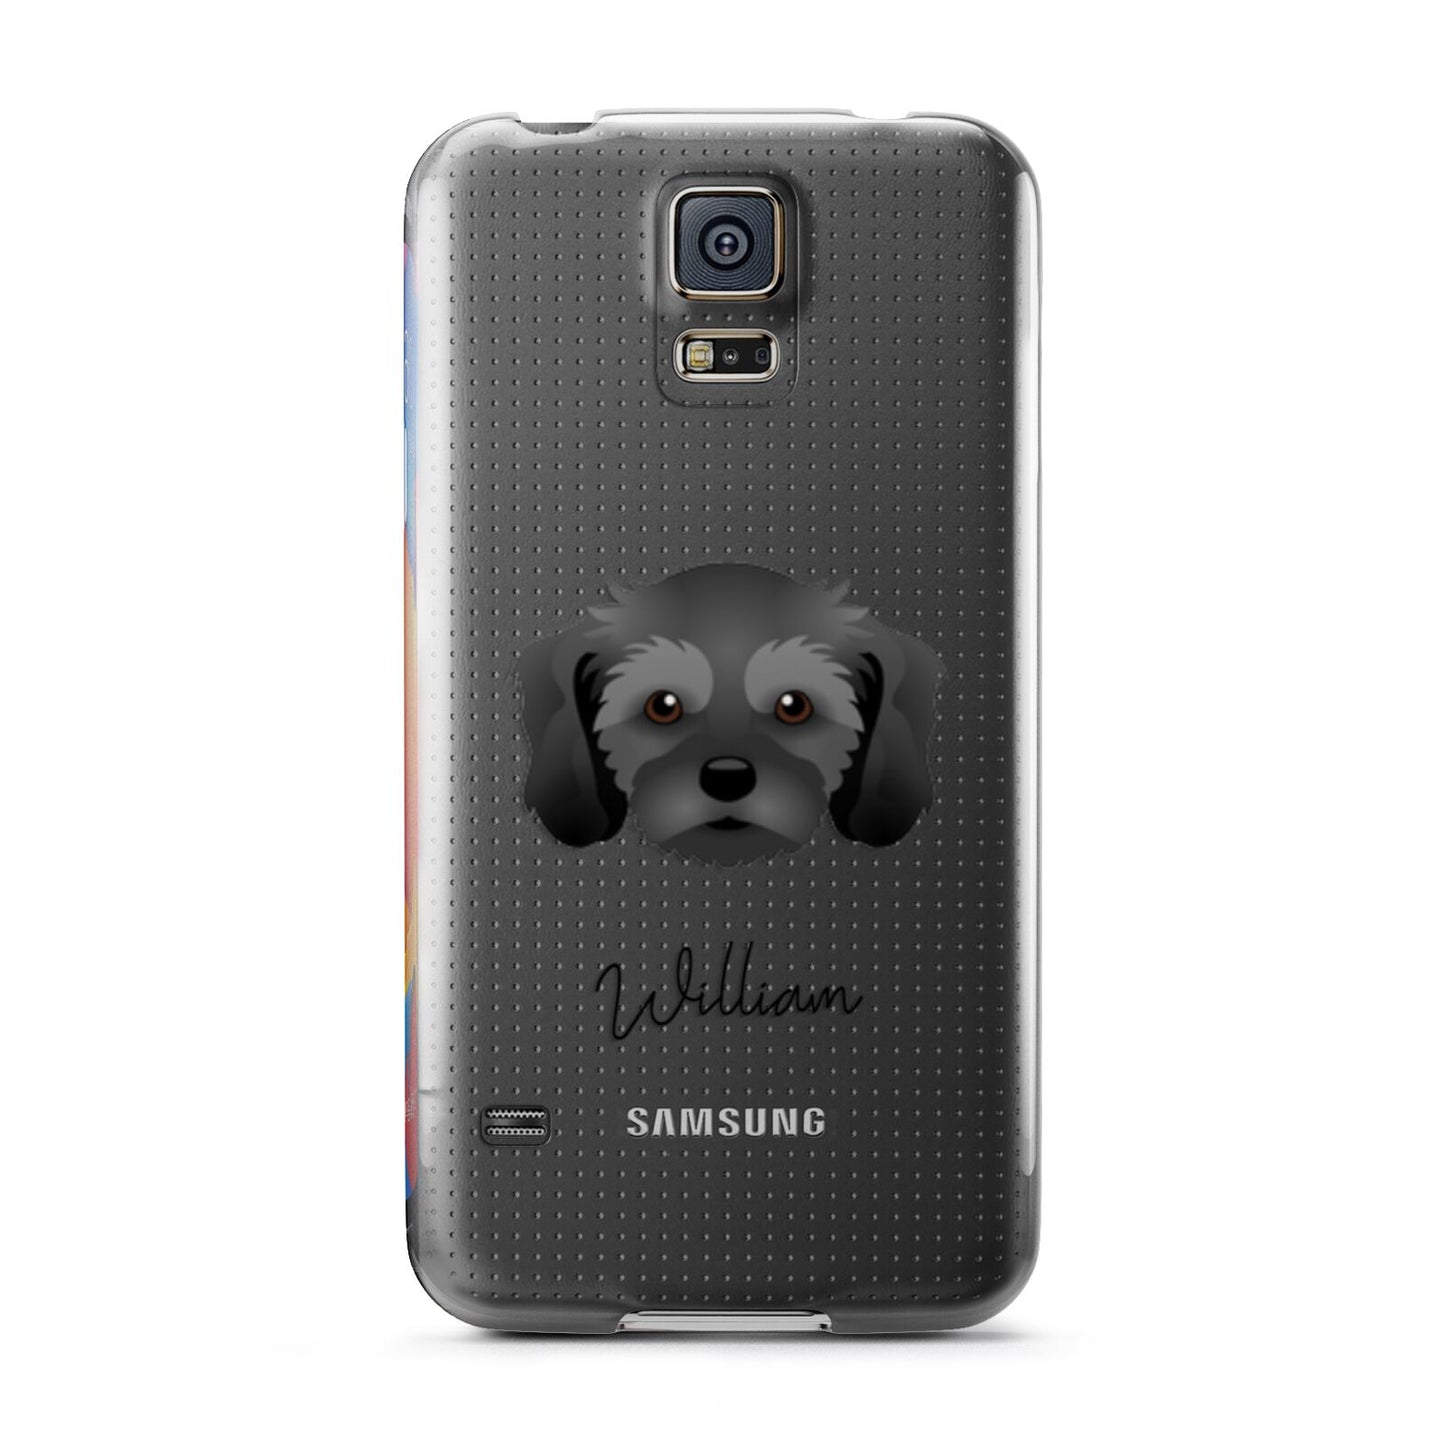 Cavachon Personalised Samsung Galaxy S5 Case